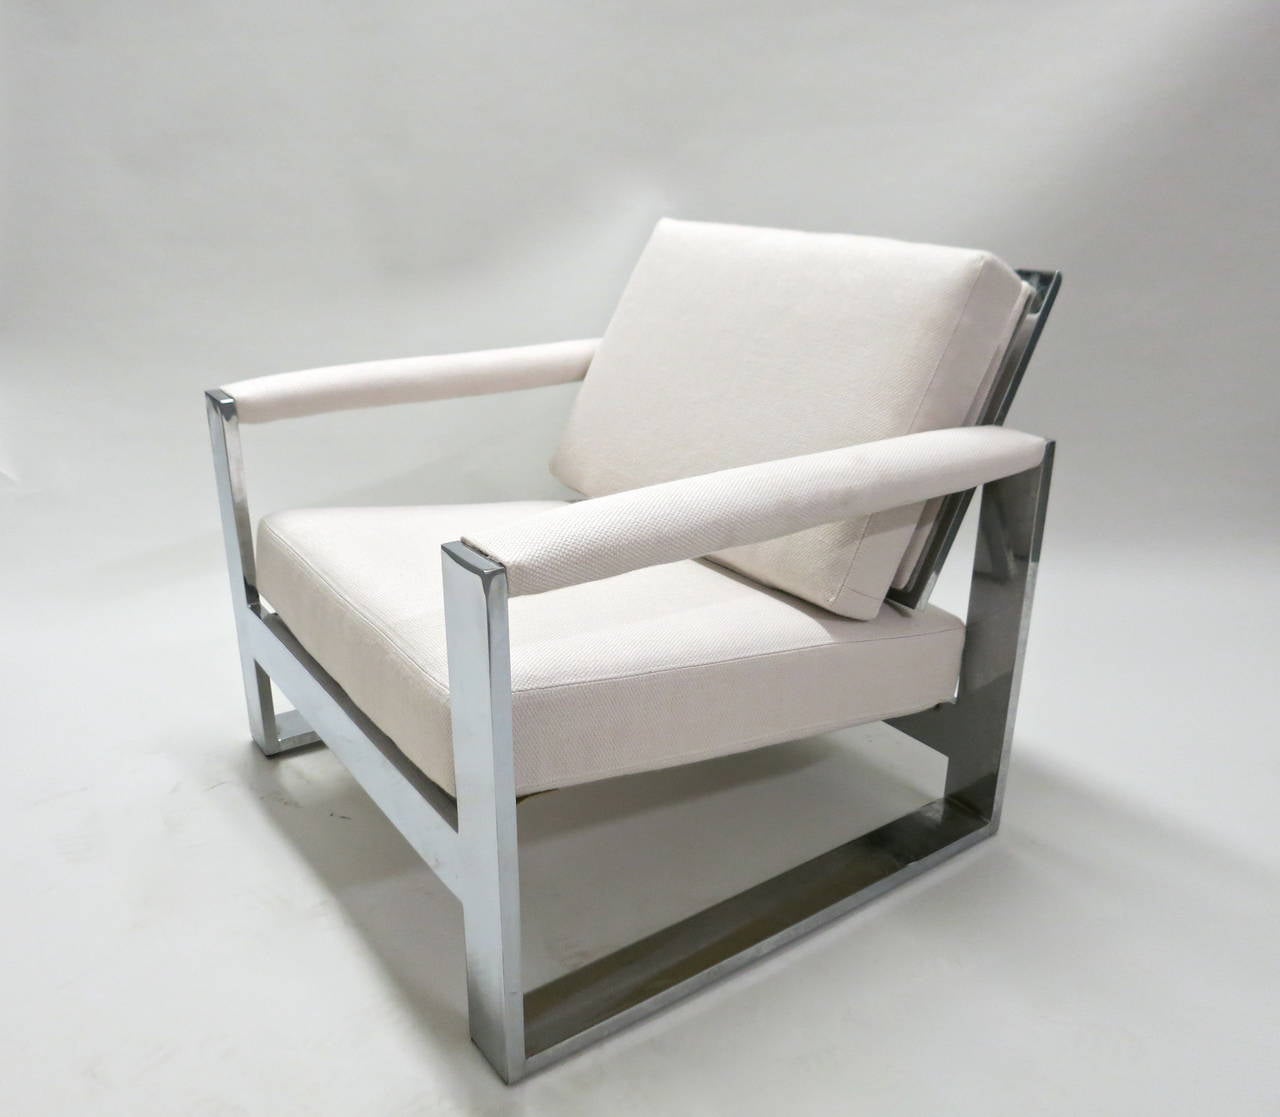 Paire de chaises de salon conçues par Milo Baughman qui ont été retapissées dans le tissu blanc cassé illustré et qui sont fabriquées à partir de cadres en acier chromé poli, à barre plate, de trois pouces de large. Il s'agit de produits solides et